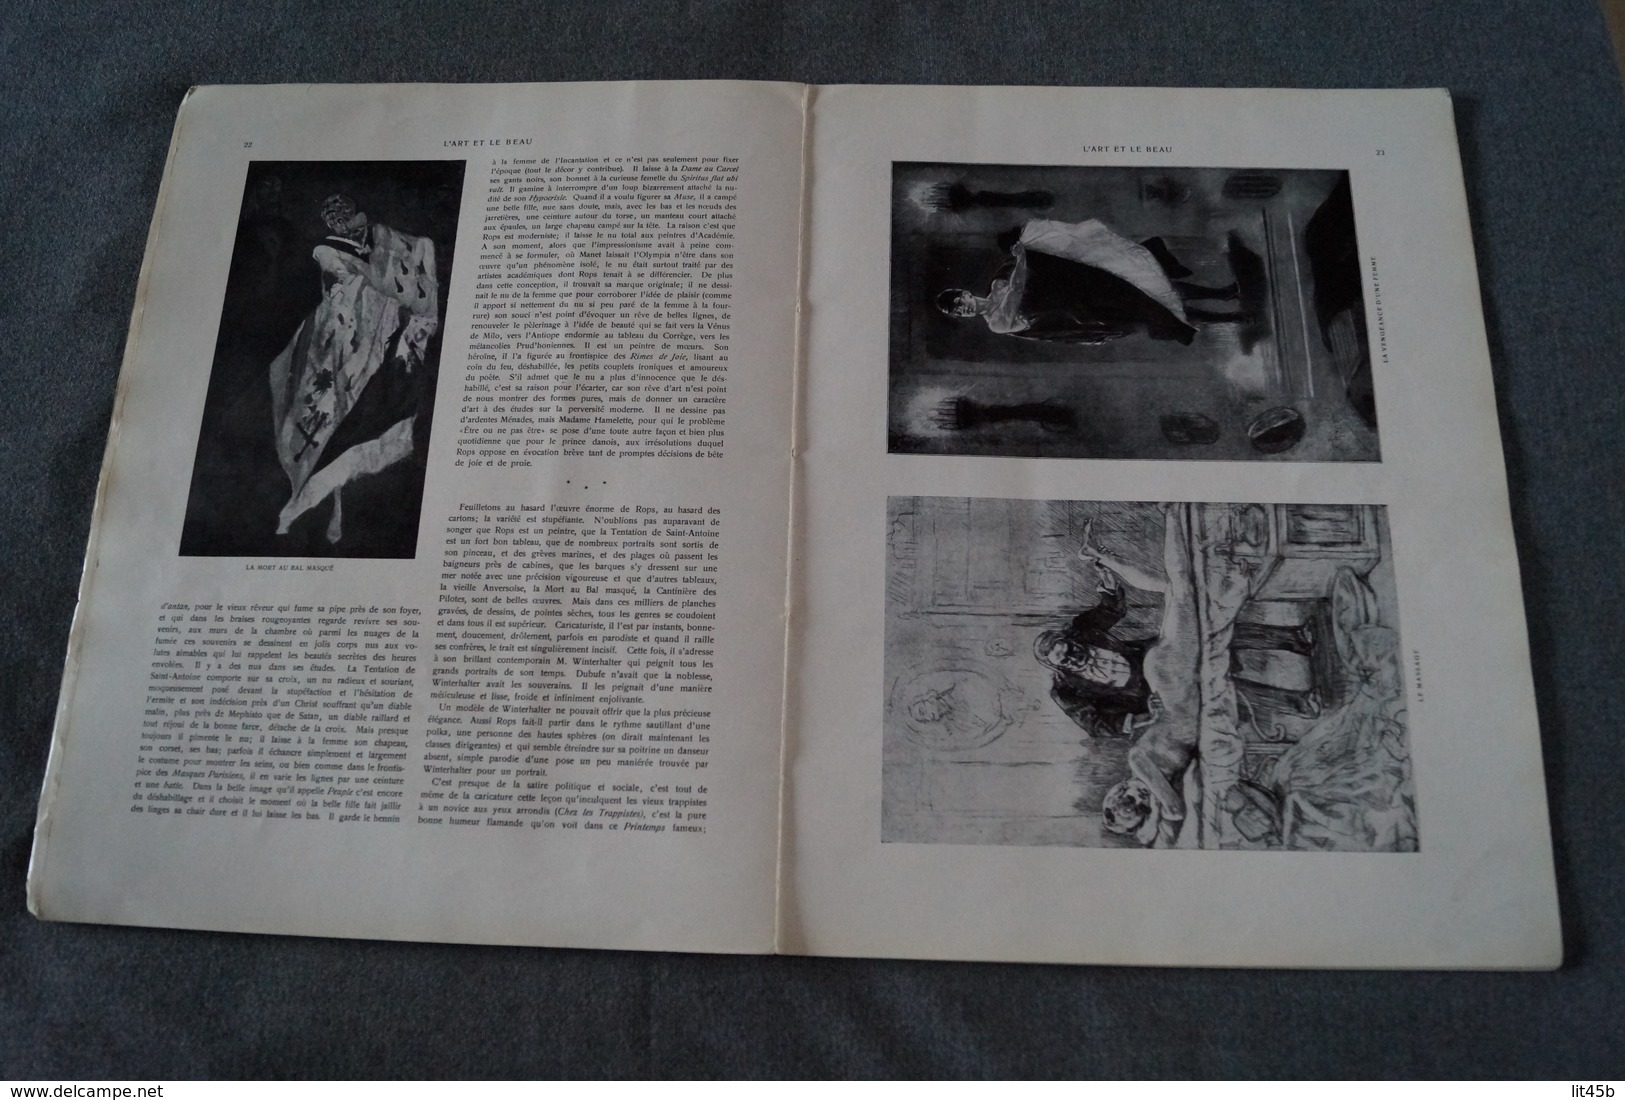 Félicien Rops et son oeuvre,texte Gustave Kamn,EX LIBRIS Georges Jean Hendrick (Géo)